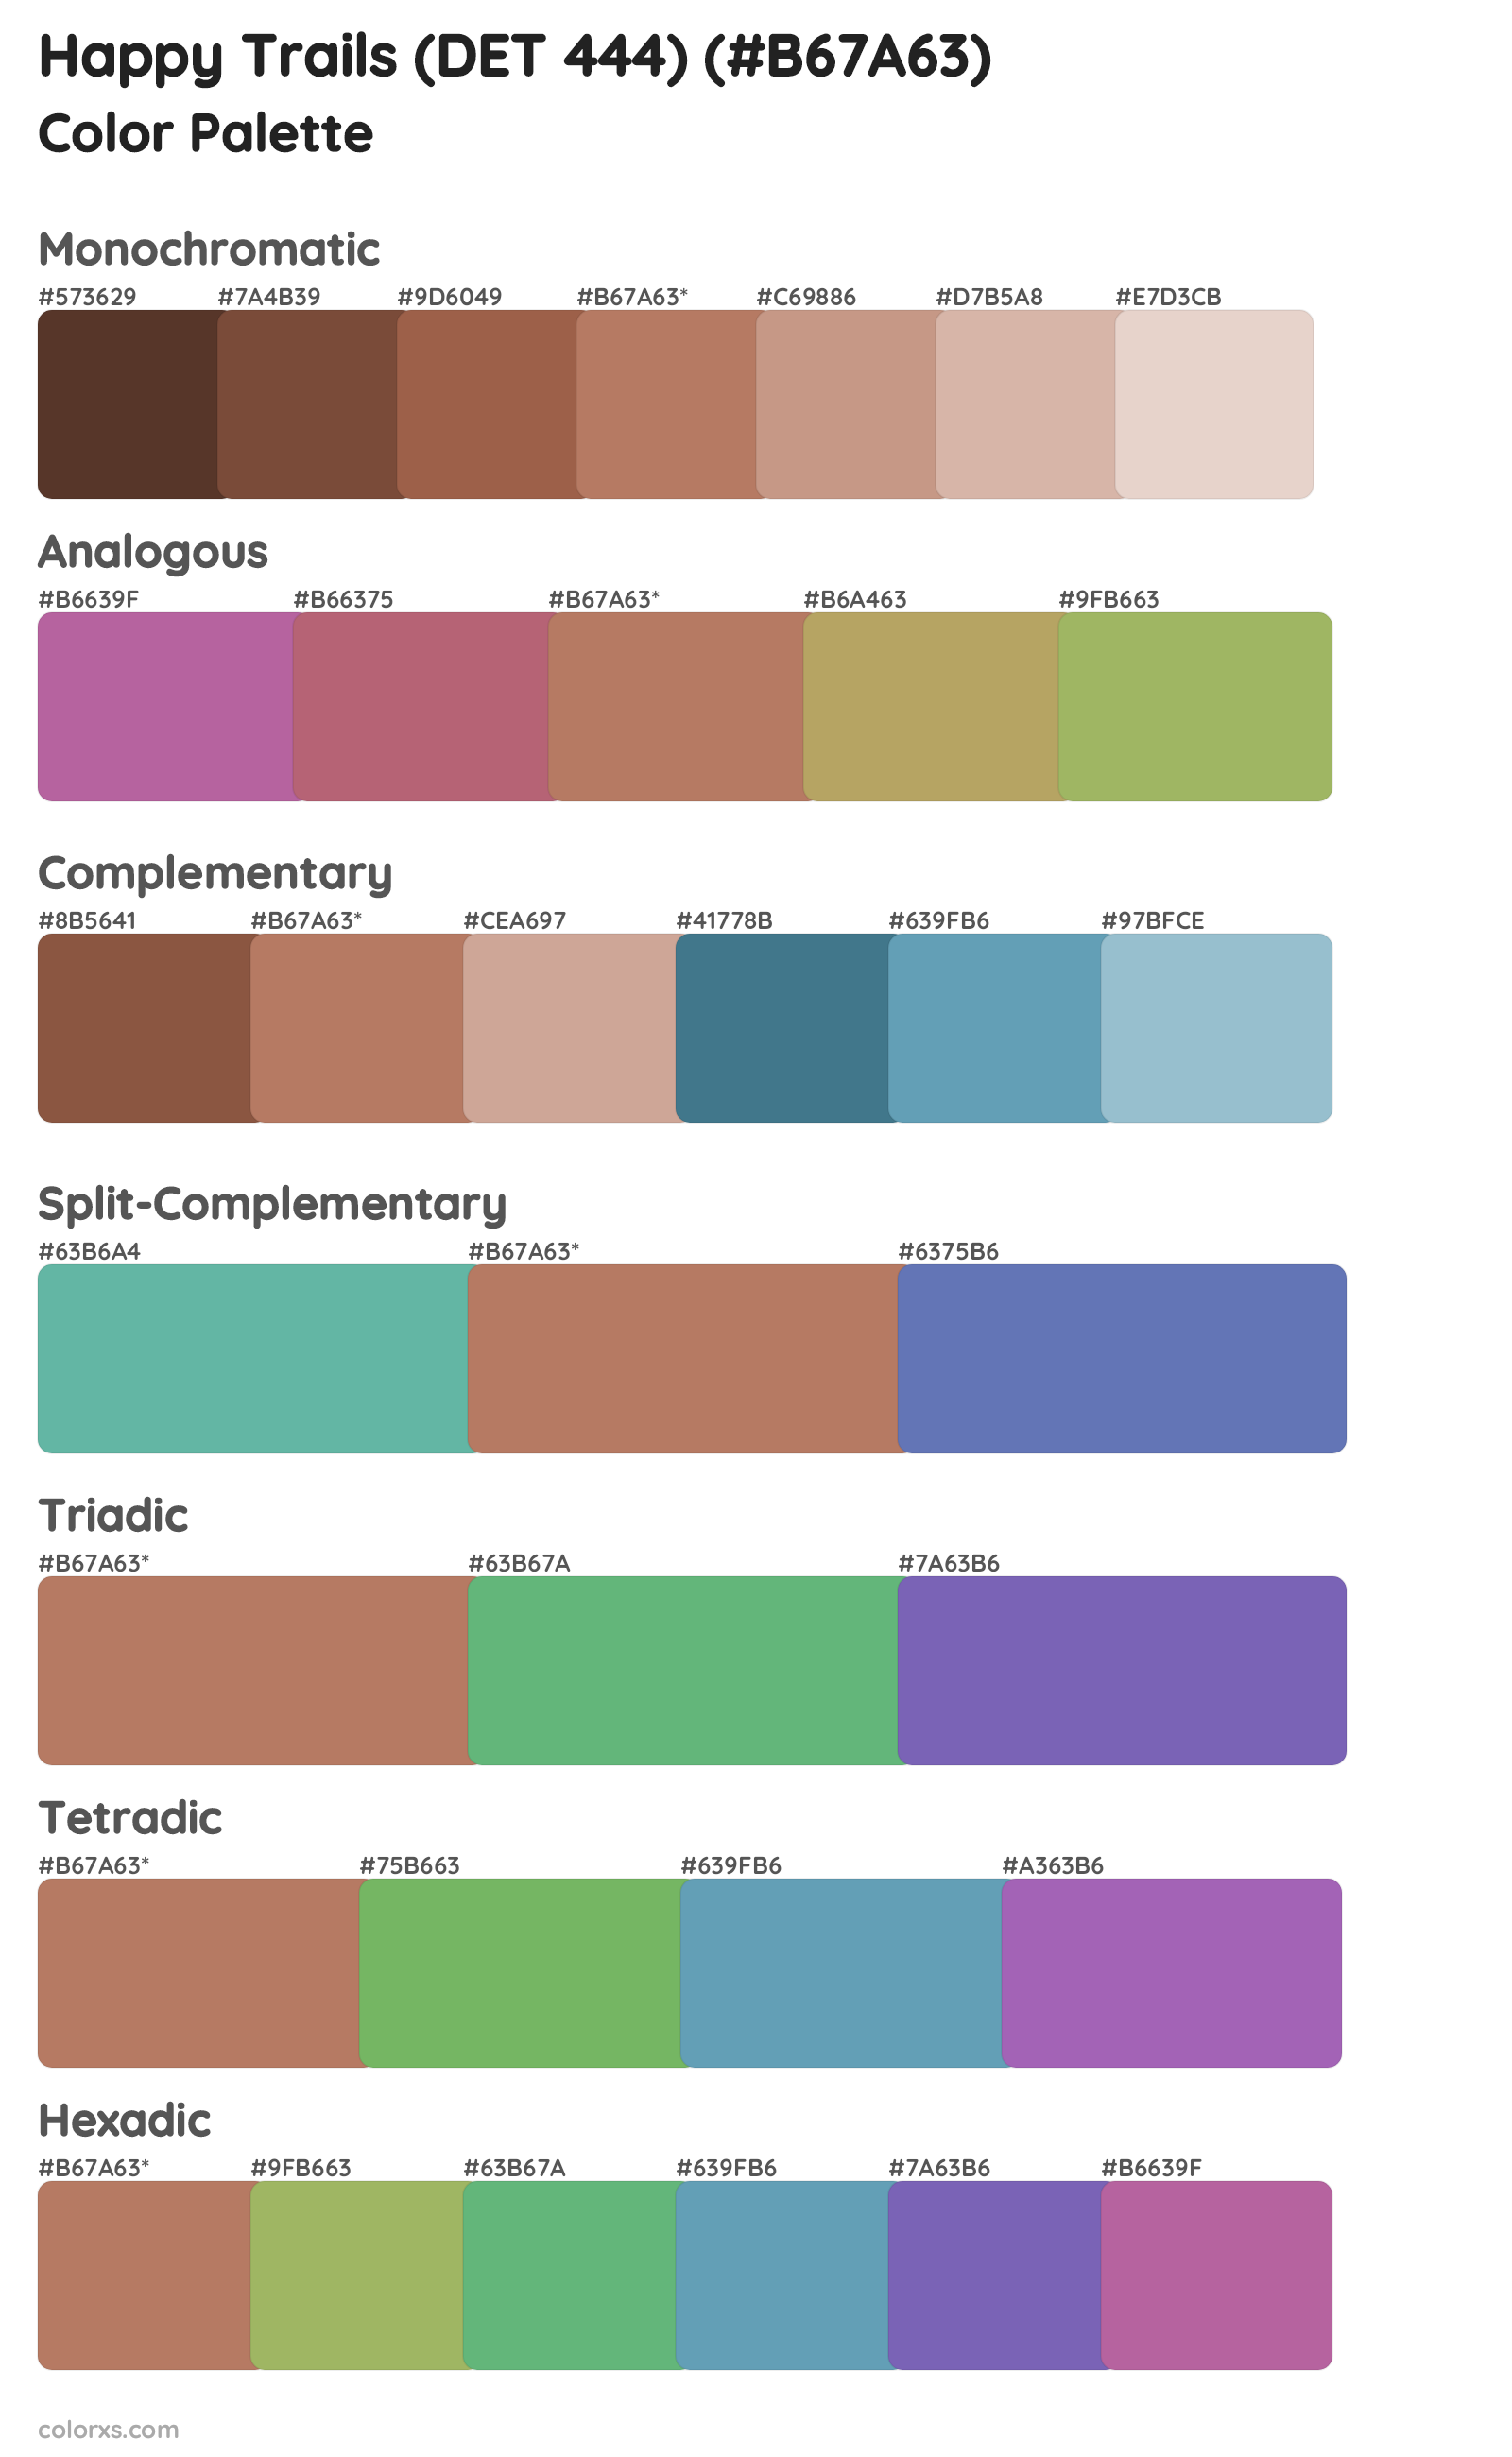 Happy Trails (DET 444) Color Scheme Palettes